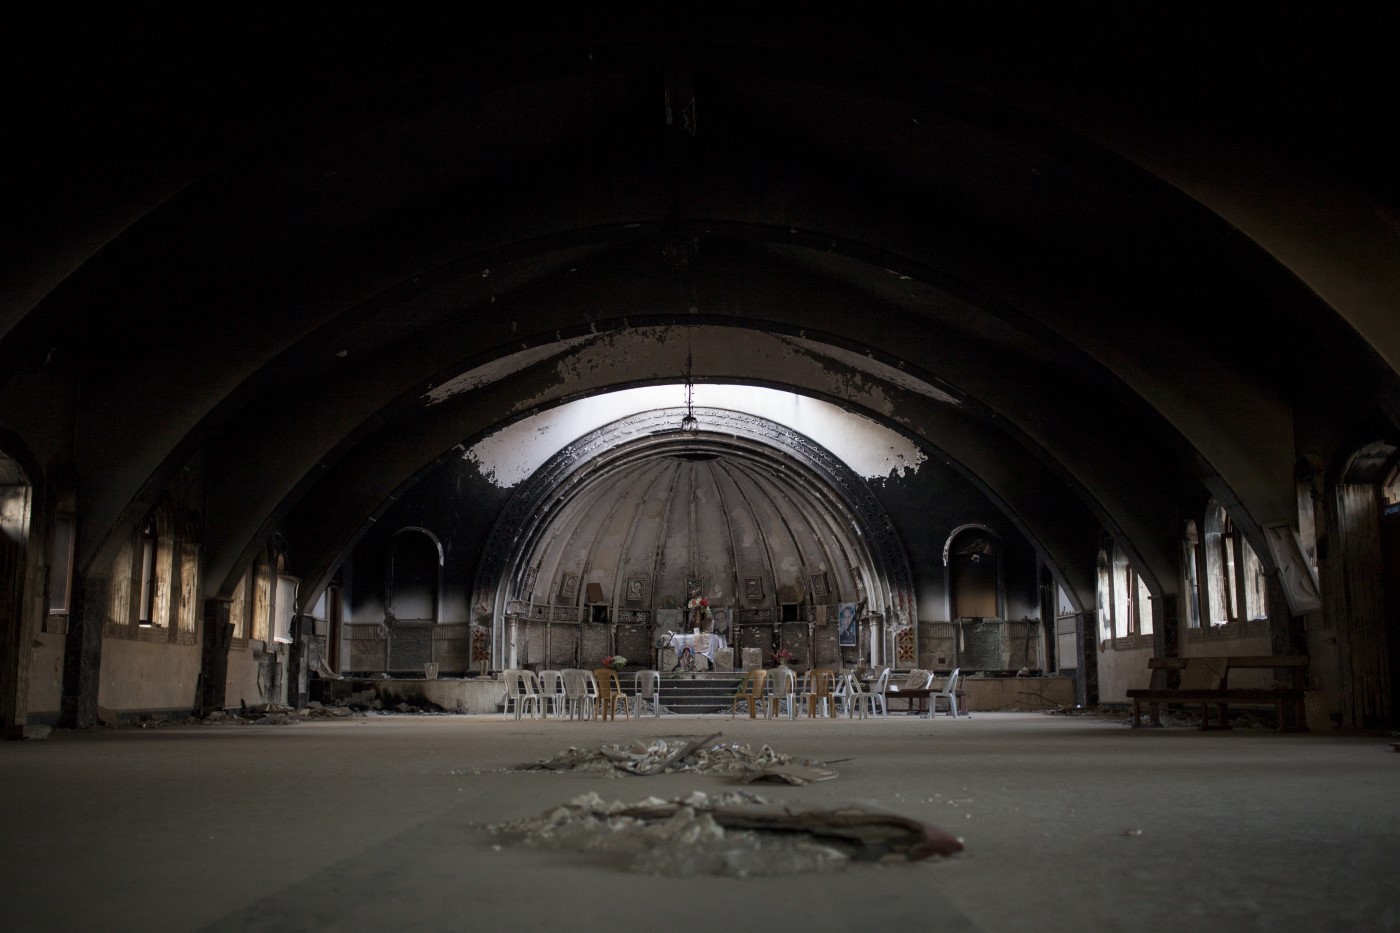 Interior del monestir “Mar-bhnam and Sara”, situat a 33 km de Mossul, cremat i destruït per l’EI. Alguns creients tornaven a recuperar l’espai després del seu alliberament. Qaraqosh - Hamdania - Mossul, Iraq. 31 de juliol de 2017